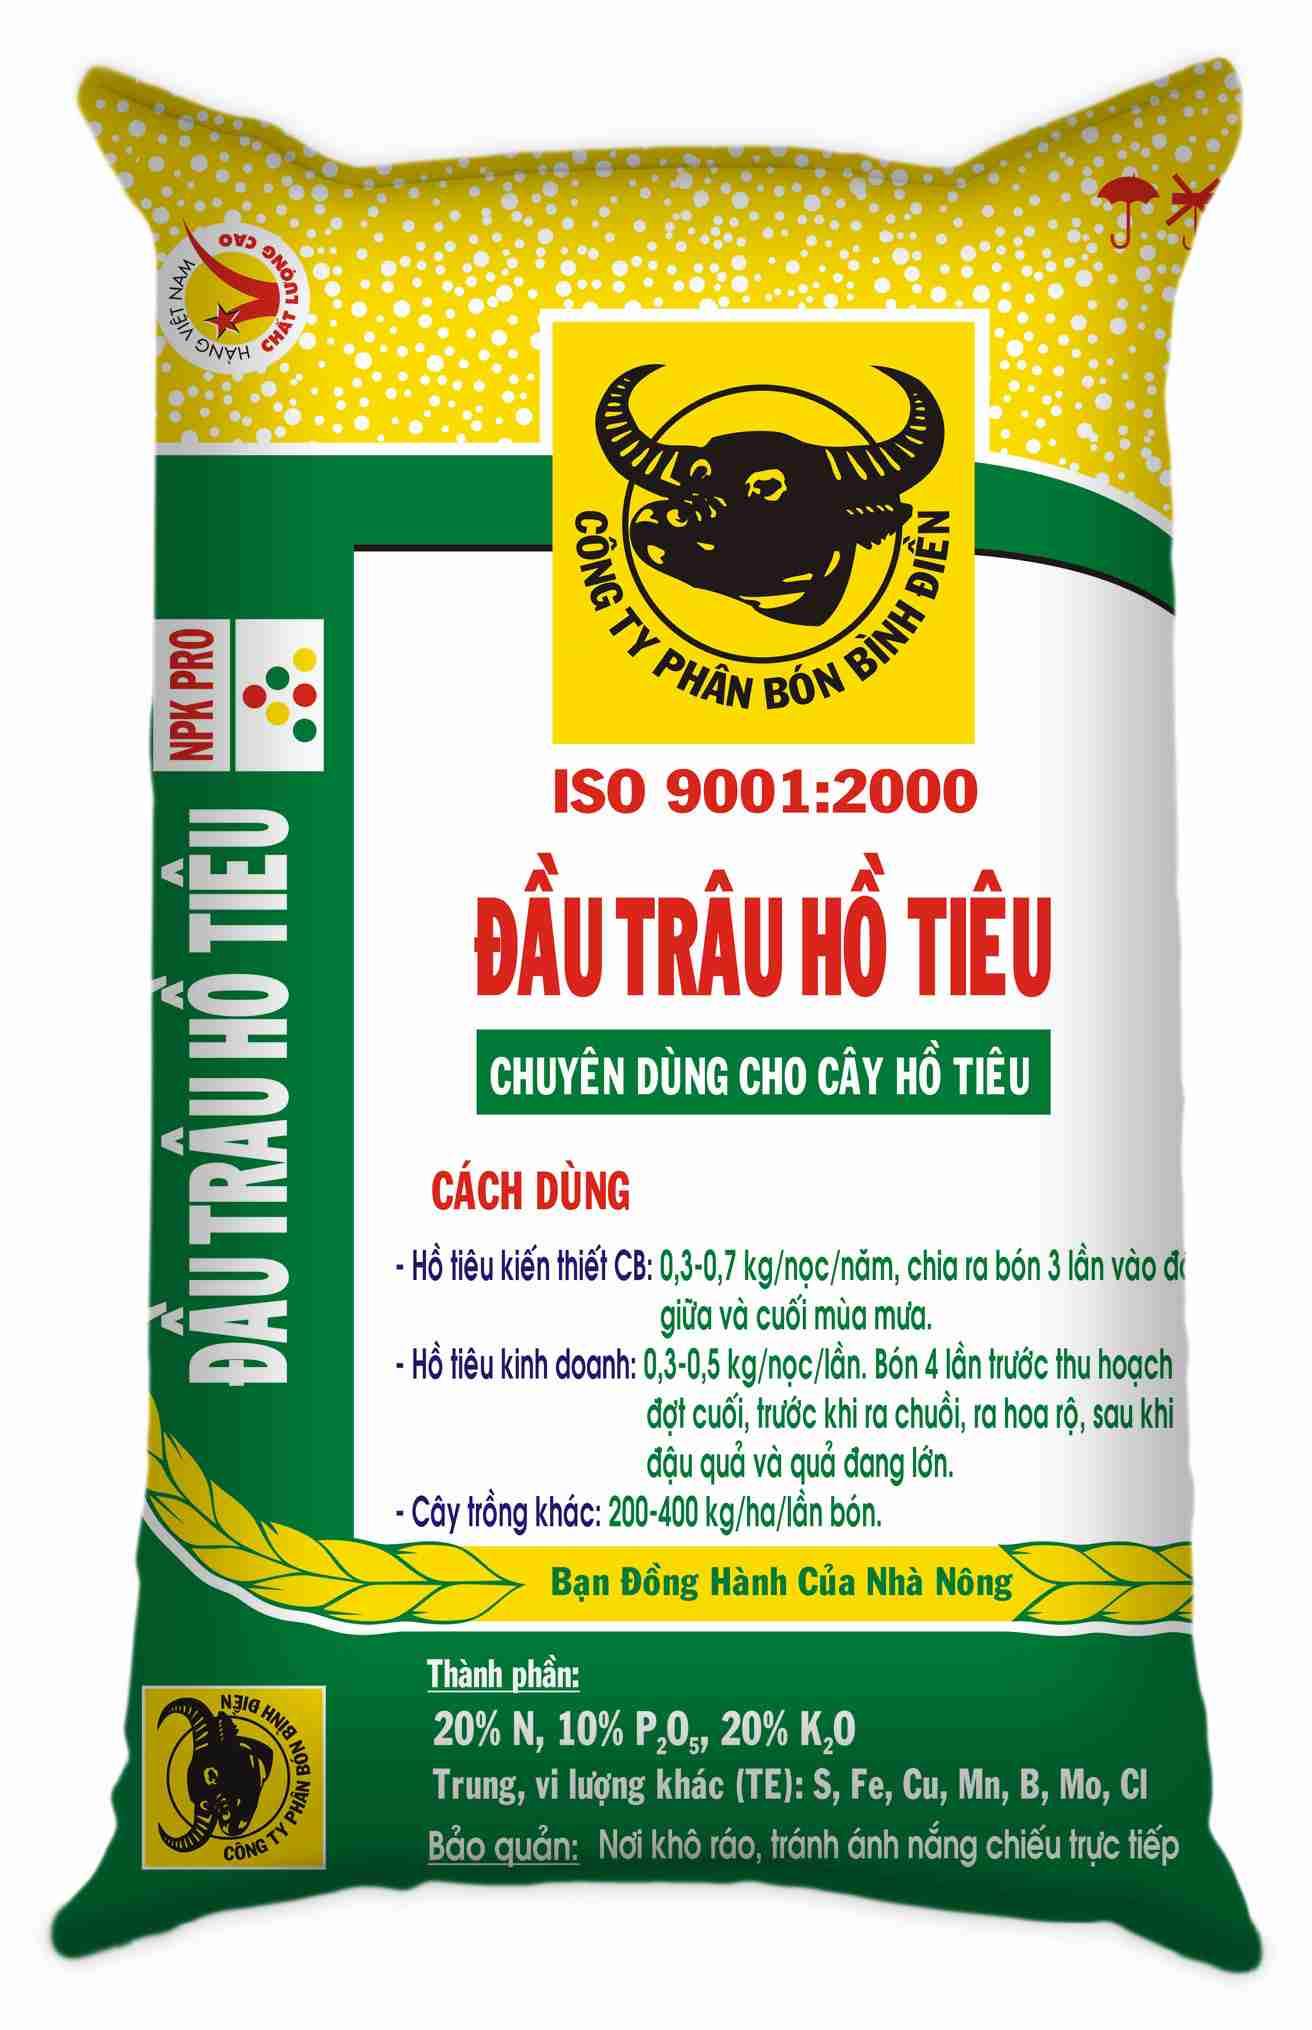 Bao bì phân bón - Công Ty TNHH Nhựa Bao Bì Phan Công